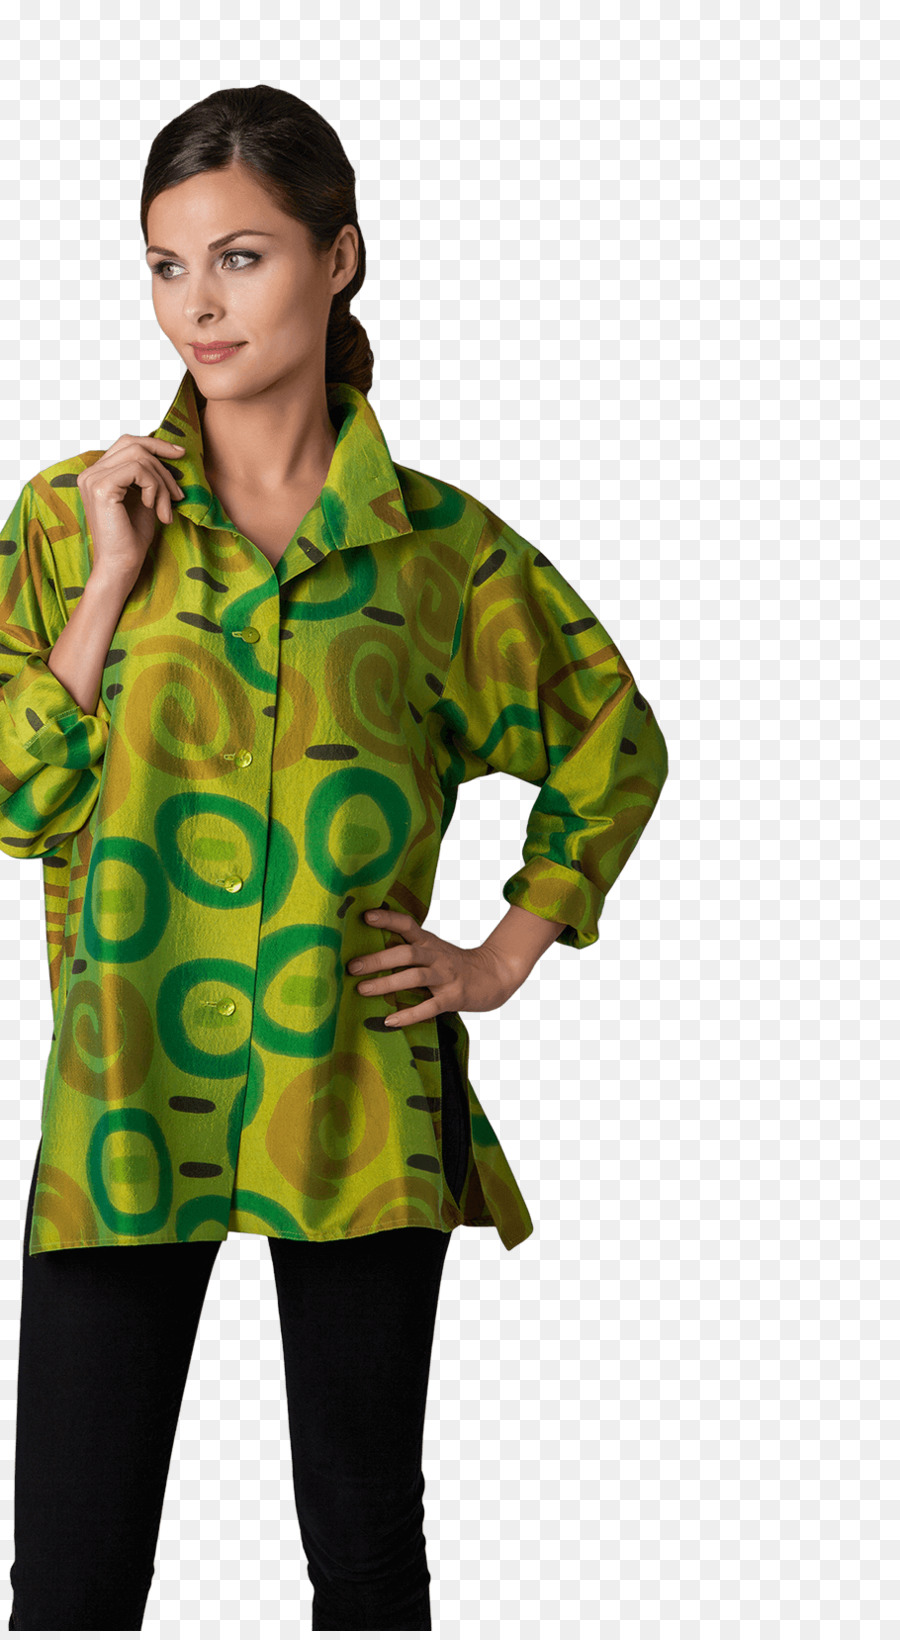 Hoodie Fashion Bekleidung T-shirt Jacke - hand Bemalte Kleider